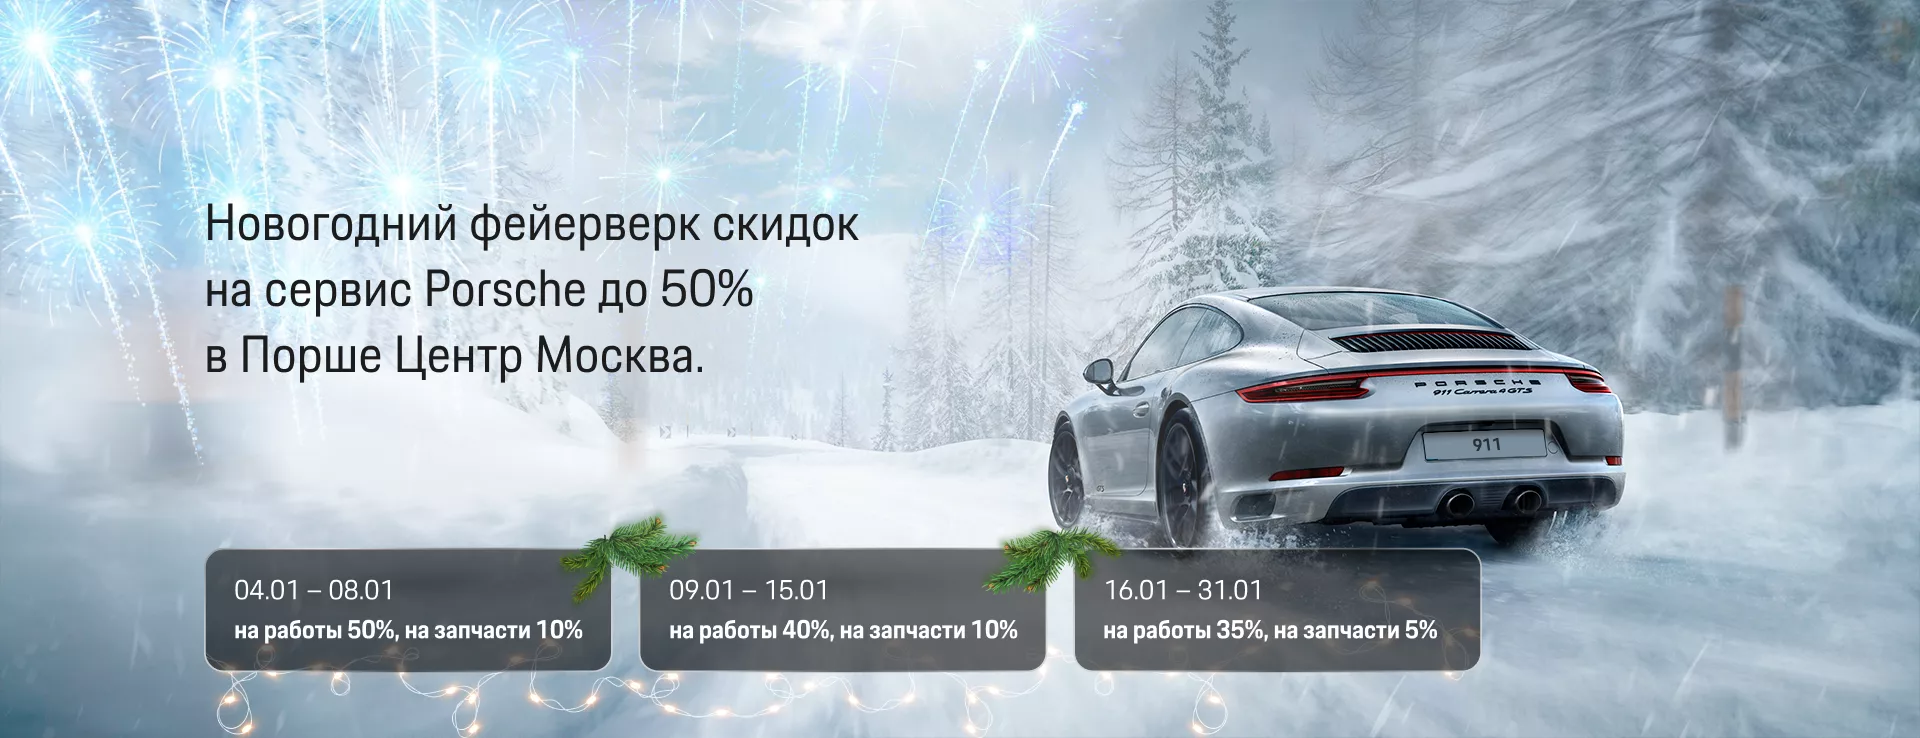 Новогодний фейерверк скидок на сервис Porsche до 50% в Порше Центр Москва.